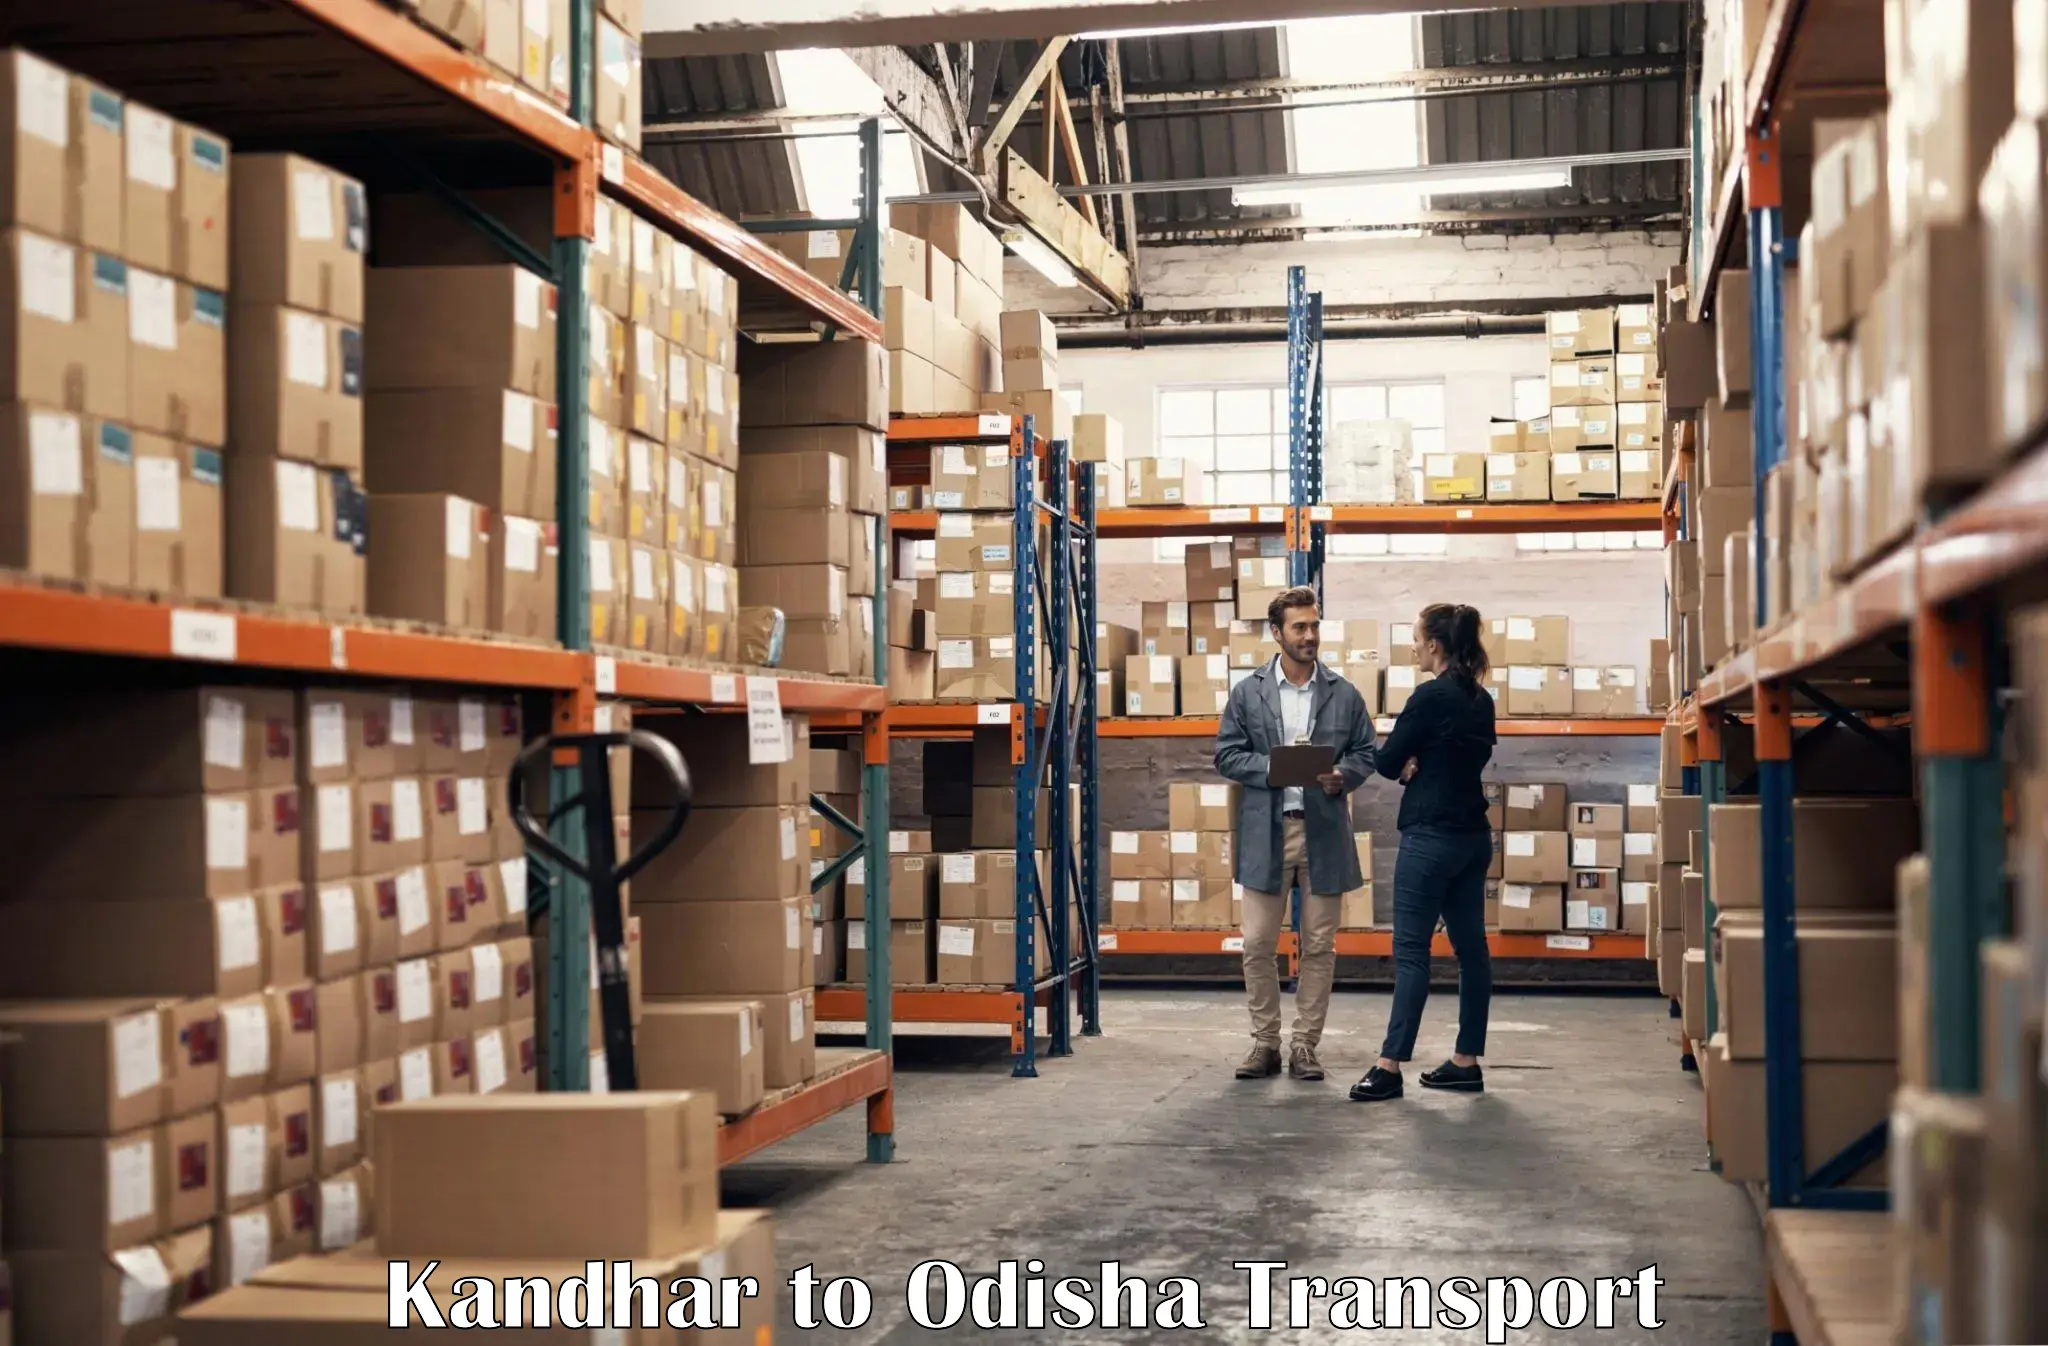 Furniture transport service Kandhar to Kosagumuda